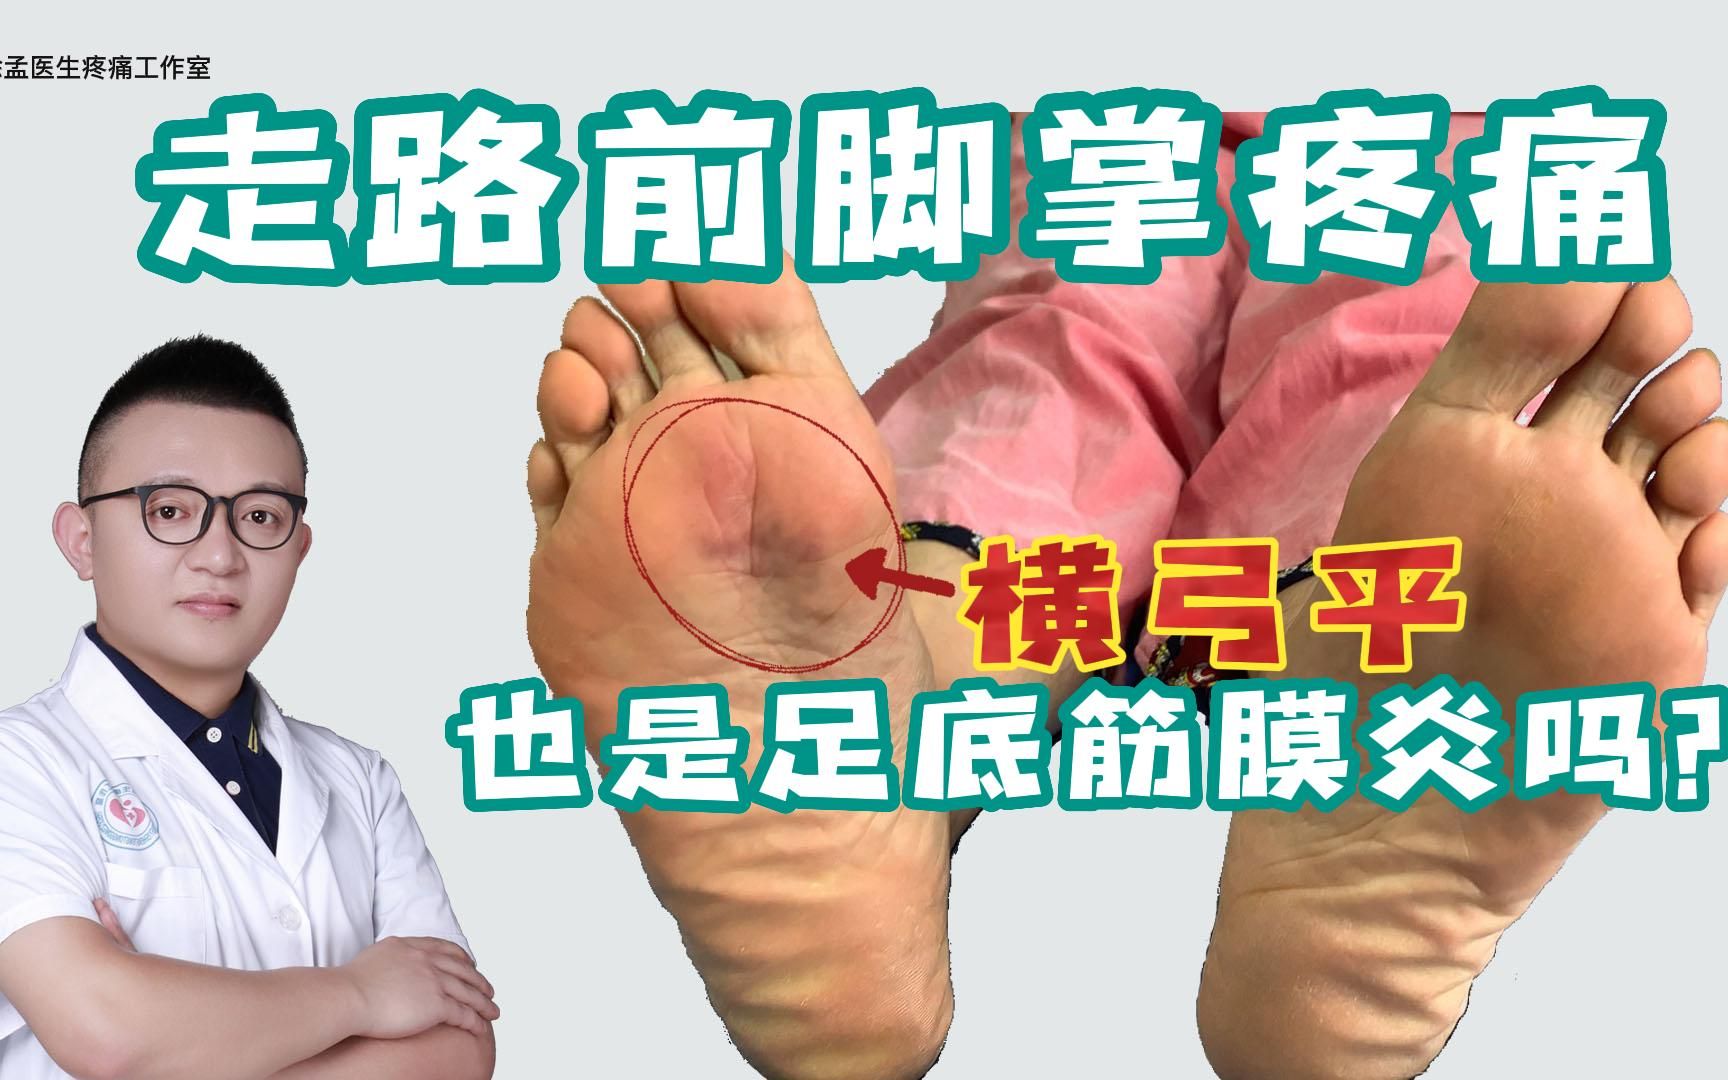 足底筋膜炎走路脚掌疼痛、前脚掌横弓平也是足底筋膜炎吗？